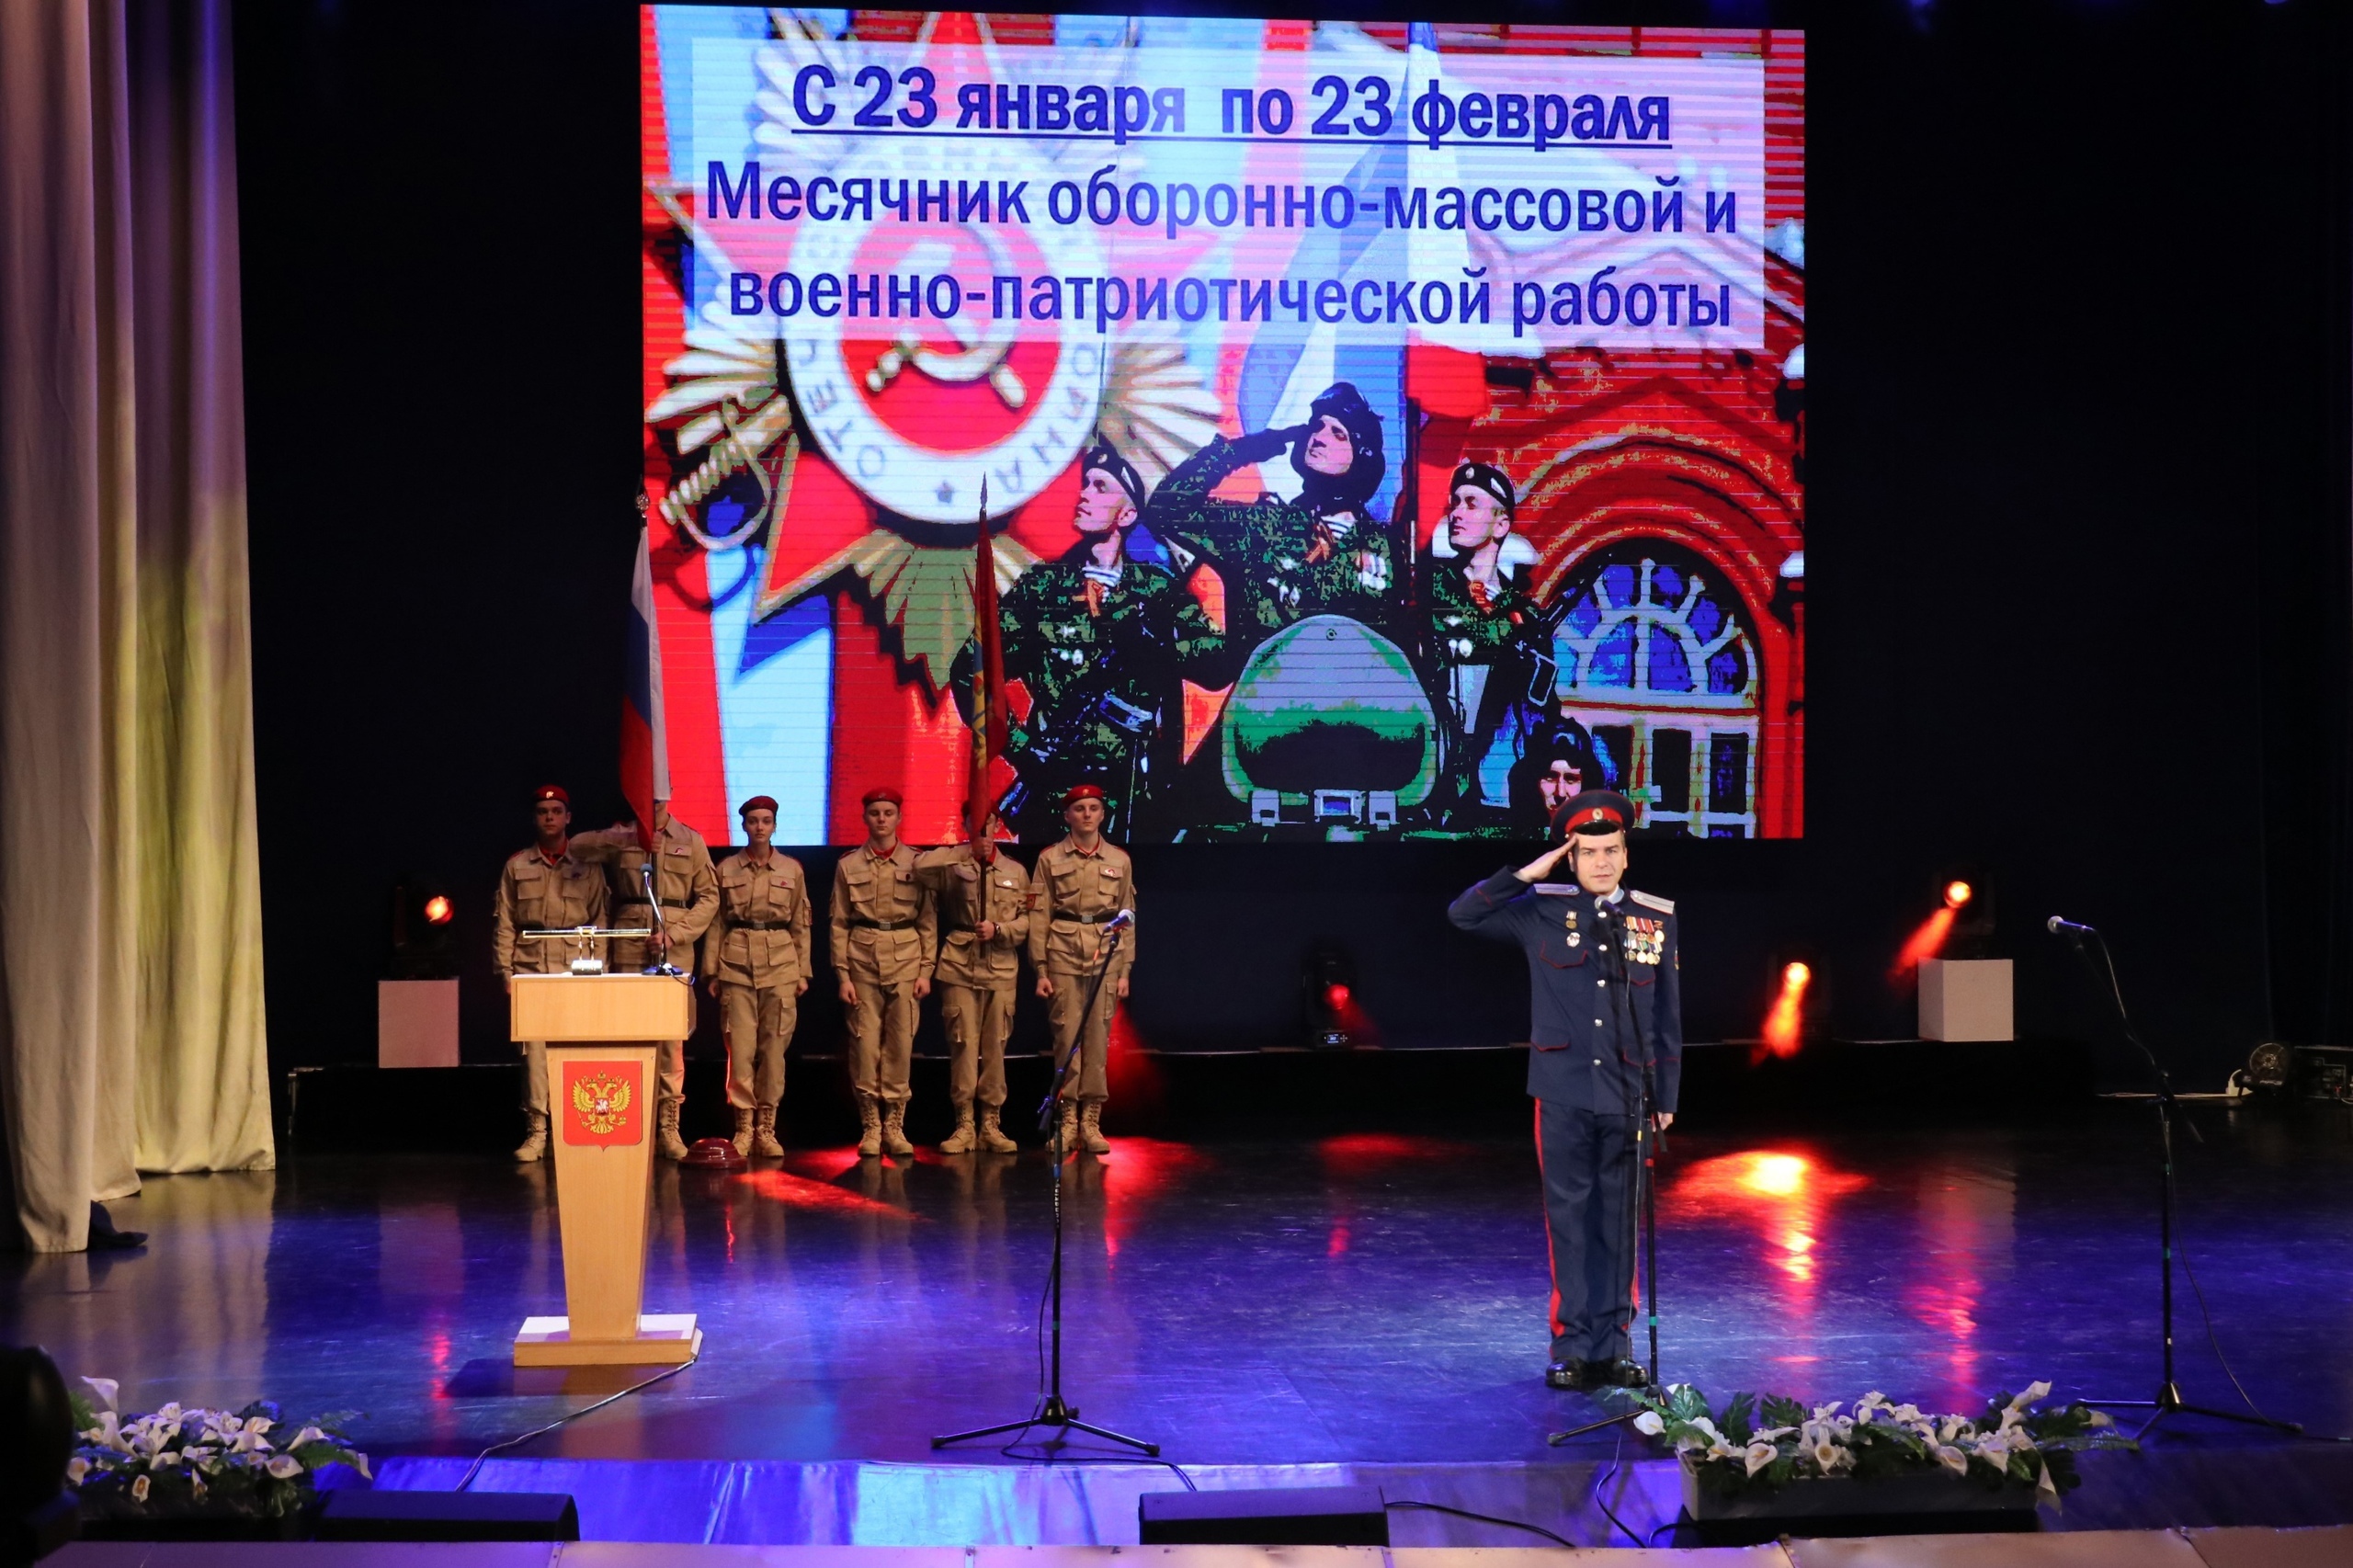 Открытие месячника оборонно-массовой и военно-патриотической работы, посвящённого Дню защитника Отечества.